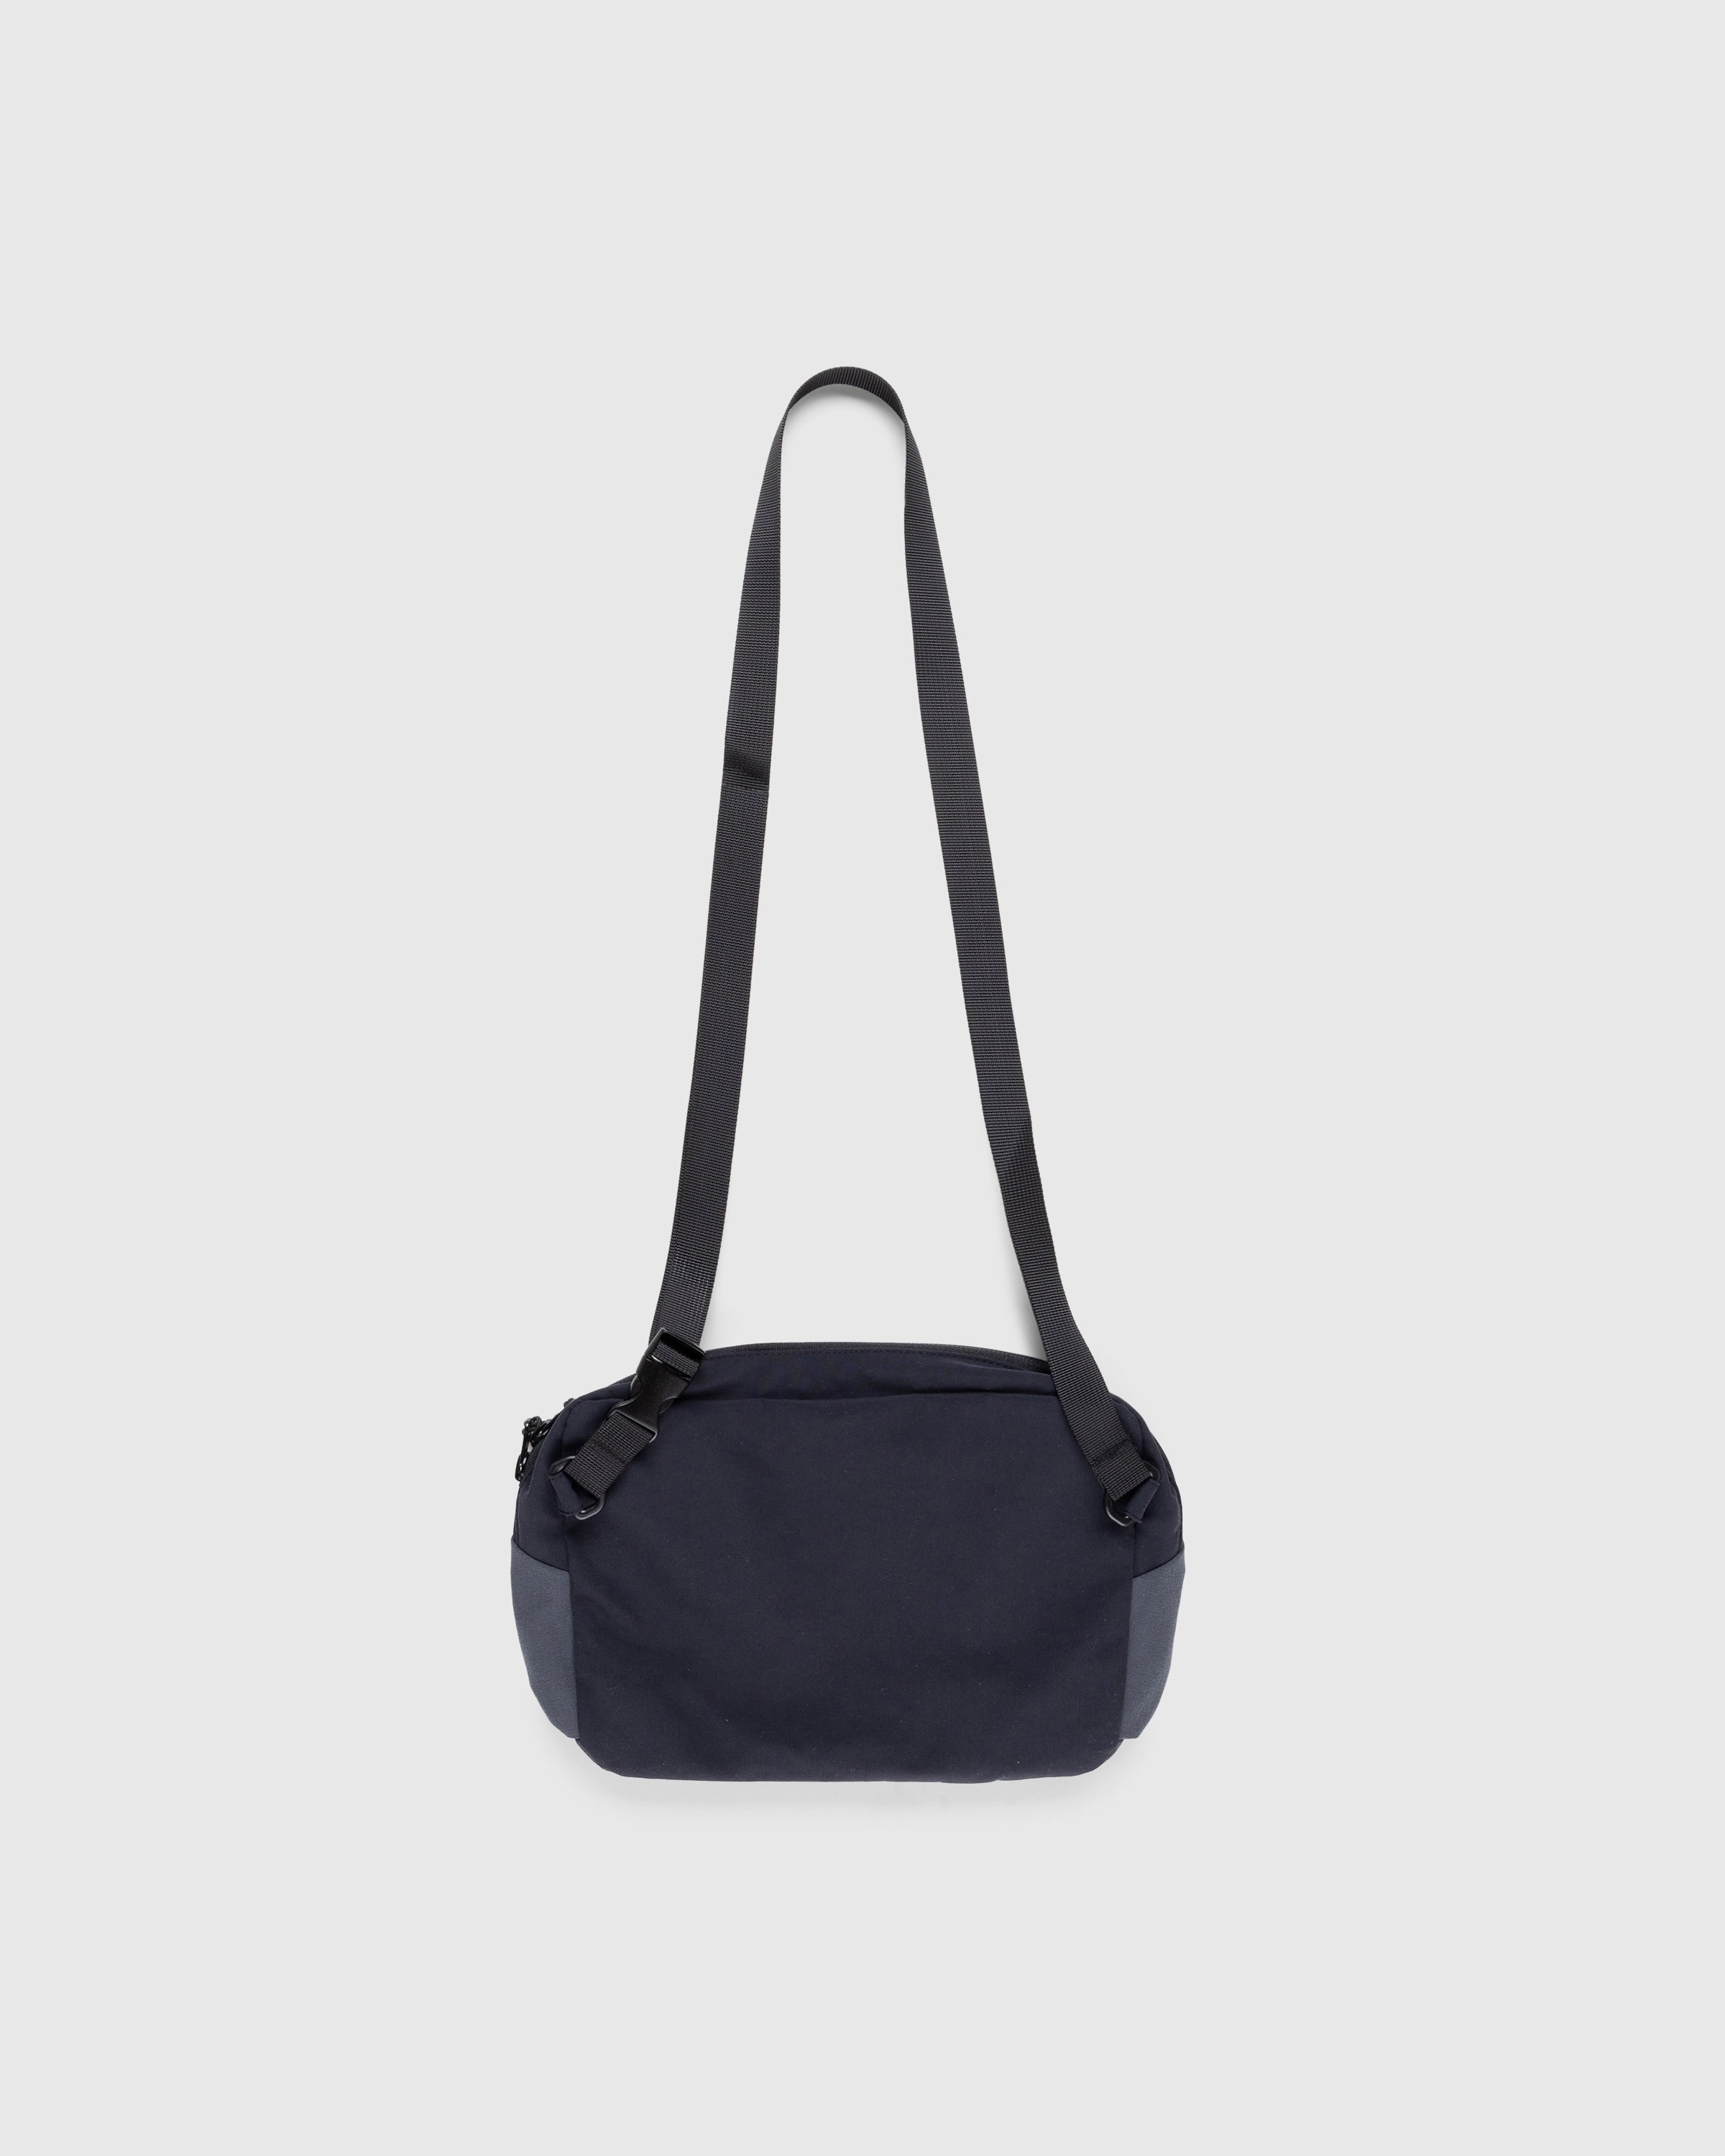 Highsnobiety HS05 – 3 Layer Nylon Side Bag Black | Highsnobiety Shop